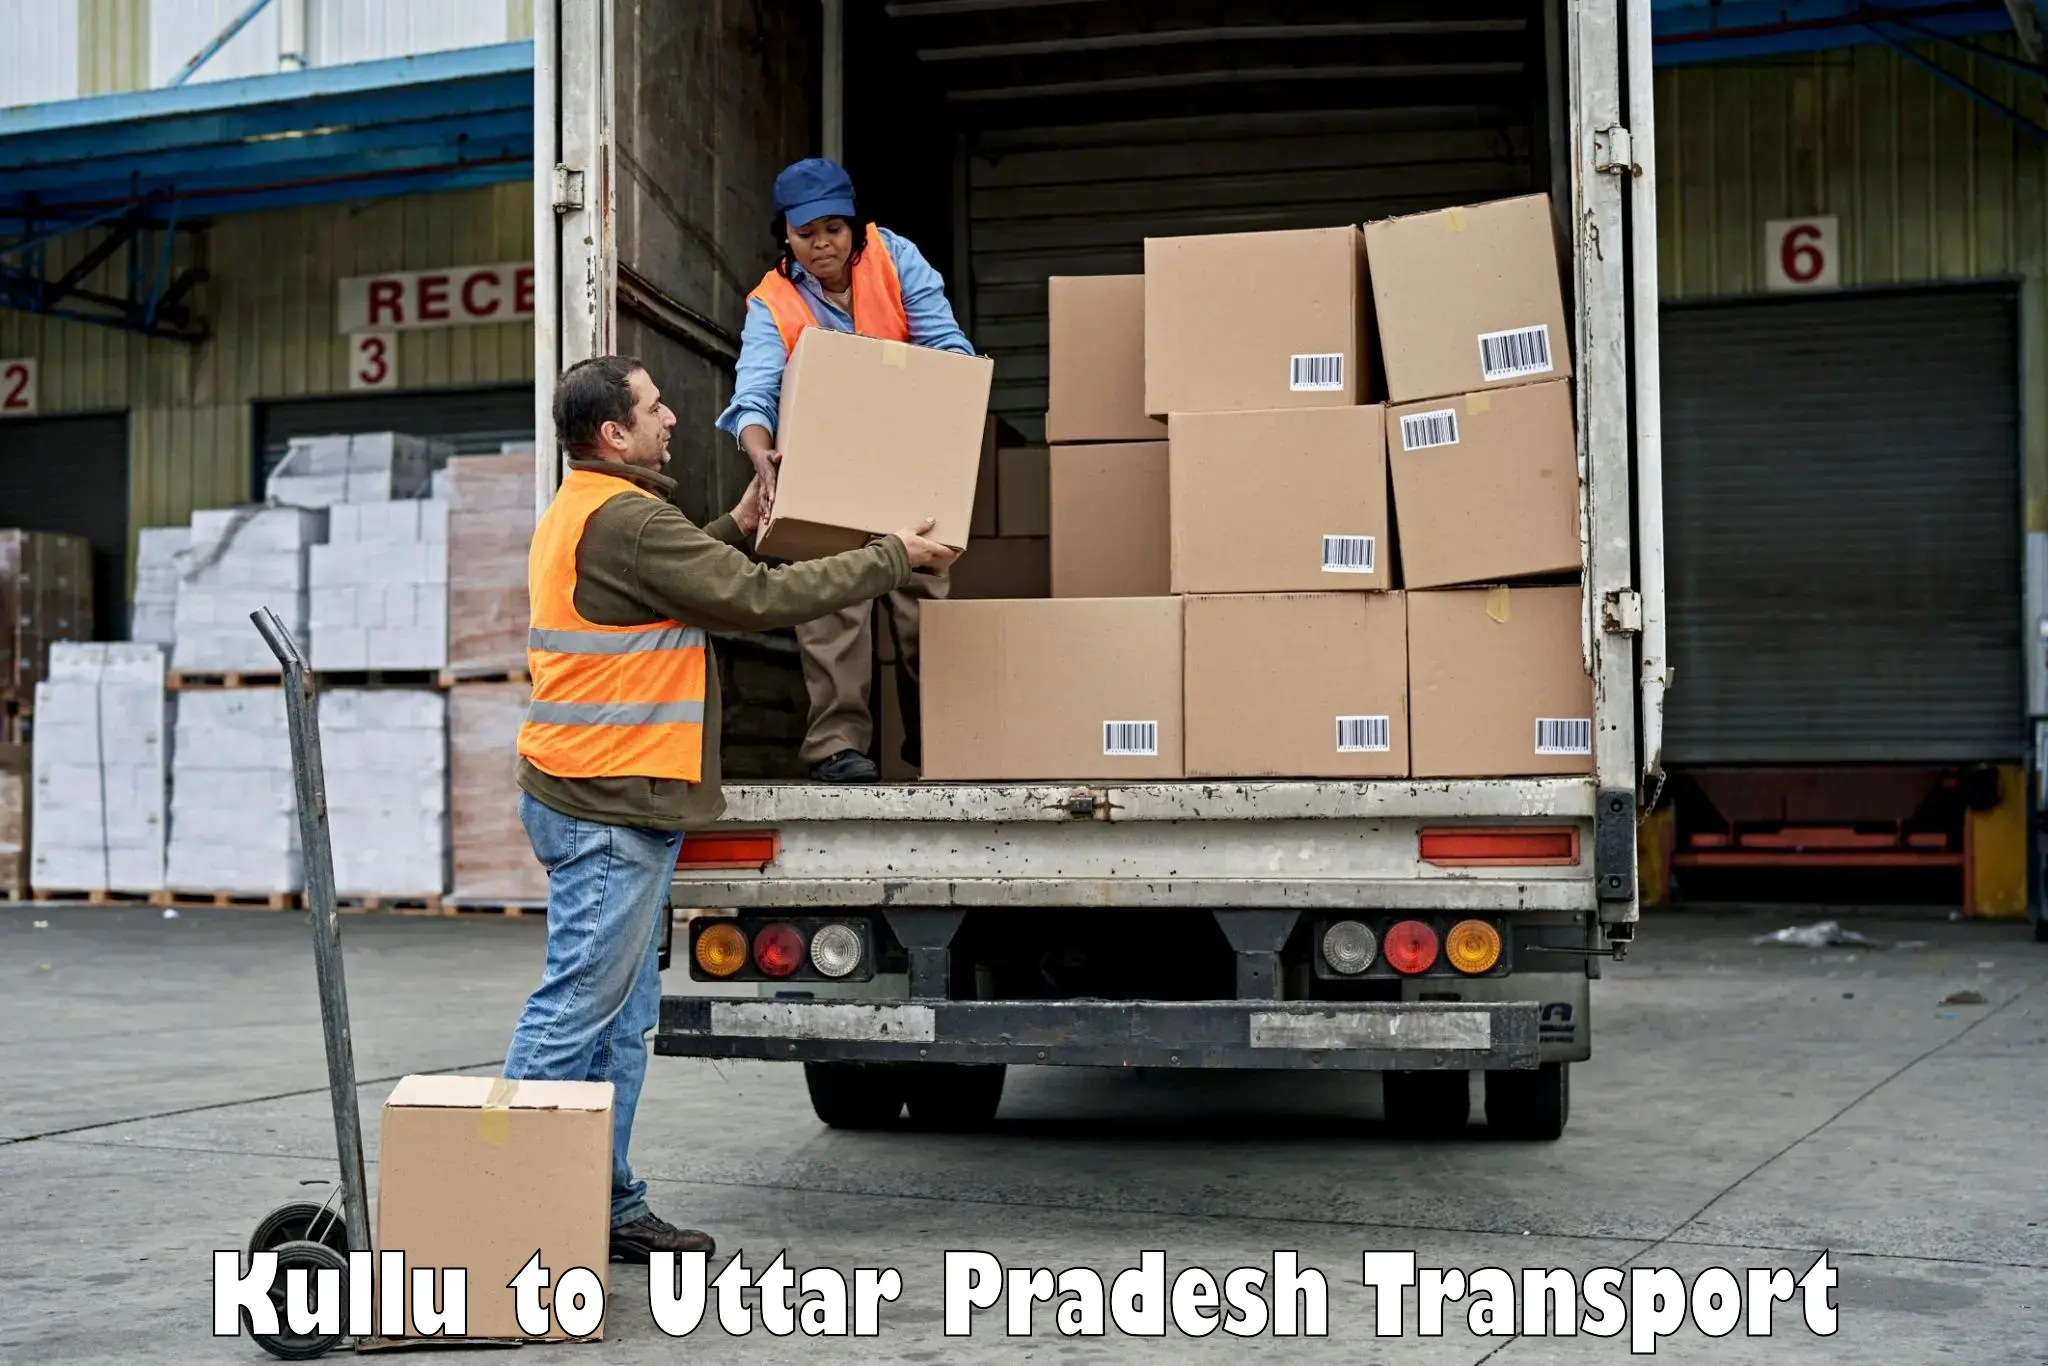 Transport in sharing Kullu to Budaun